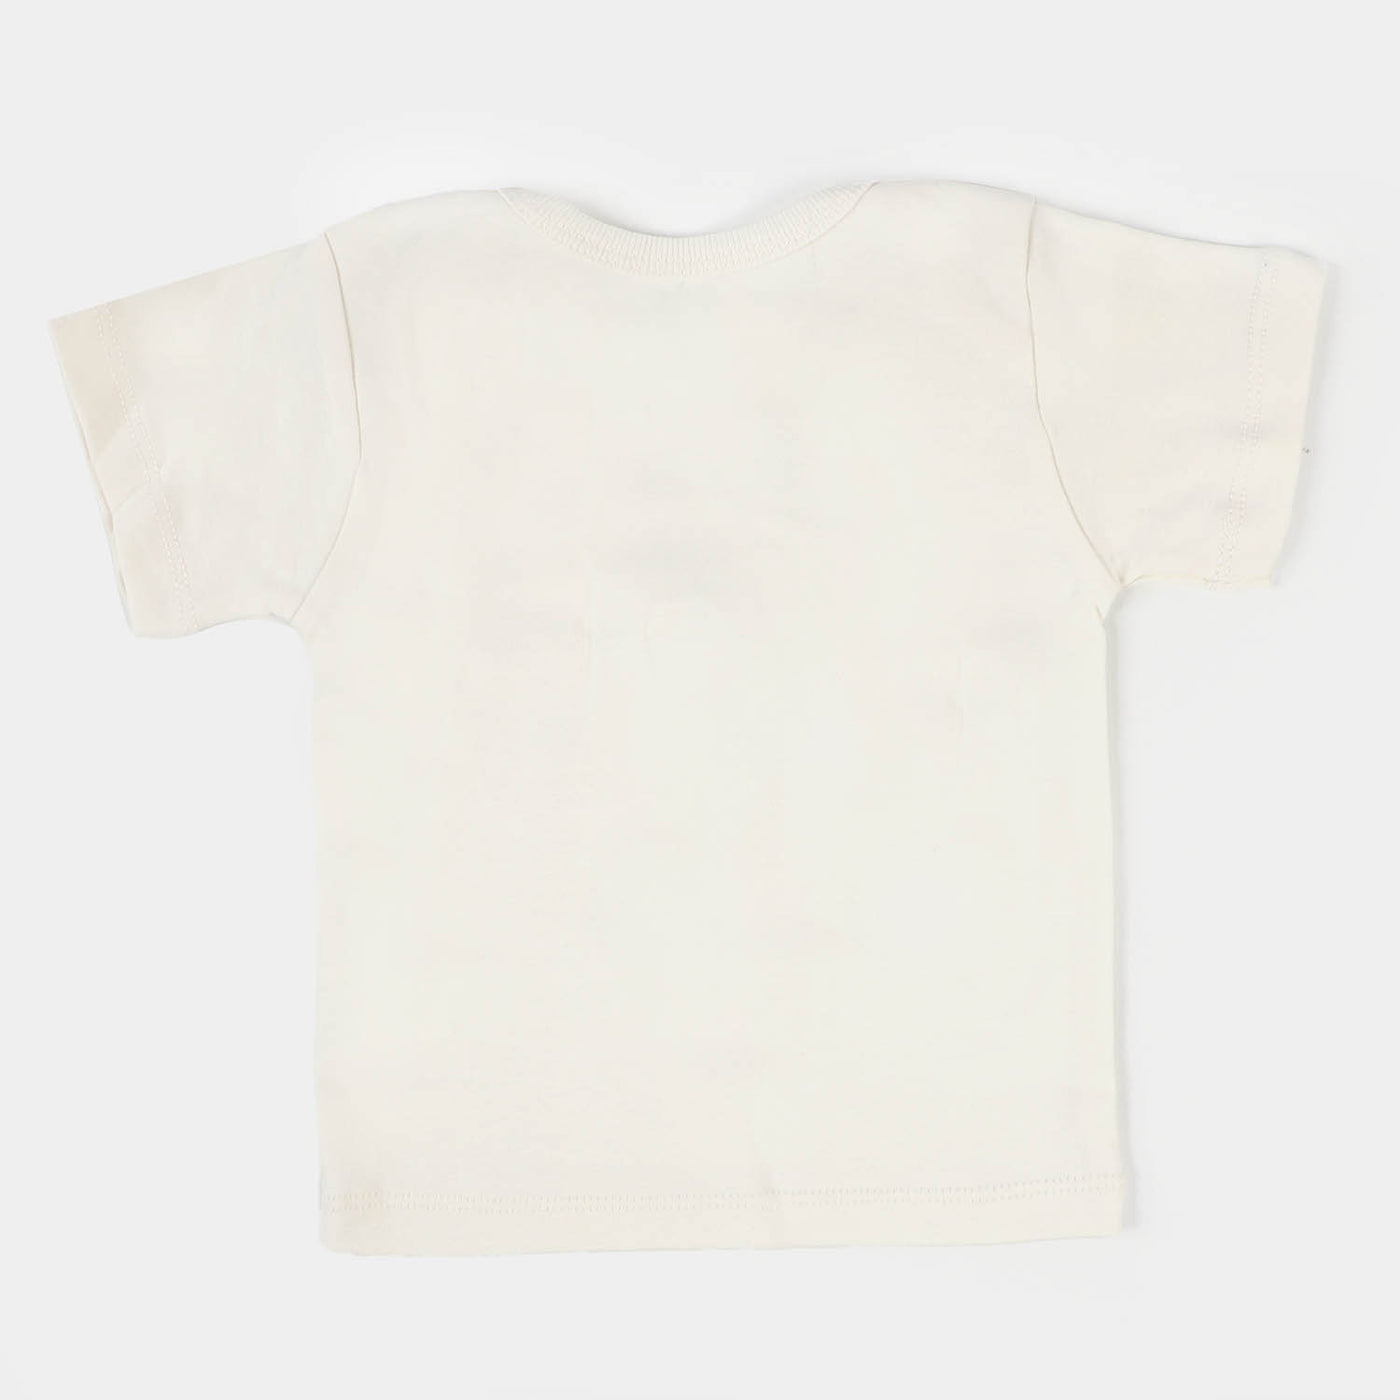 Infant Boys T-Shirt 3 PCs Set Marine - Mix